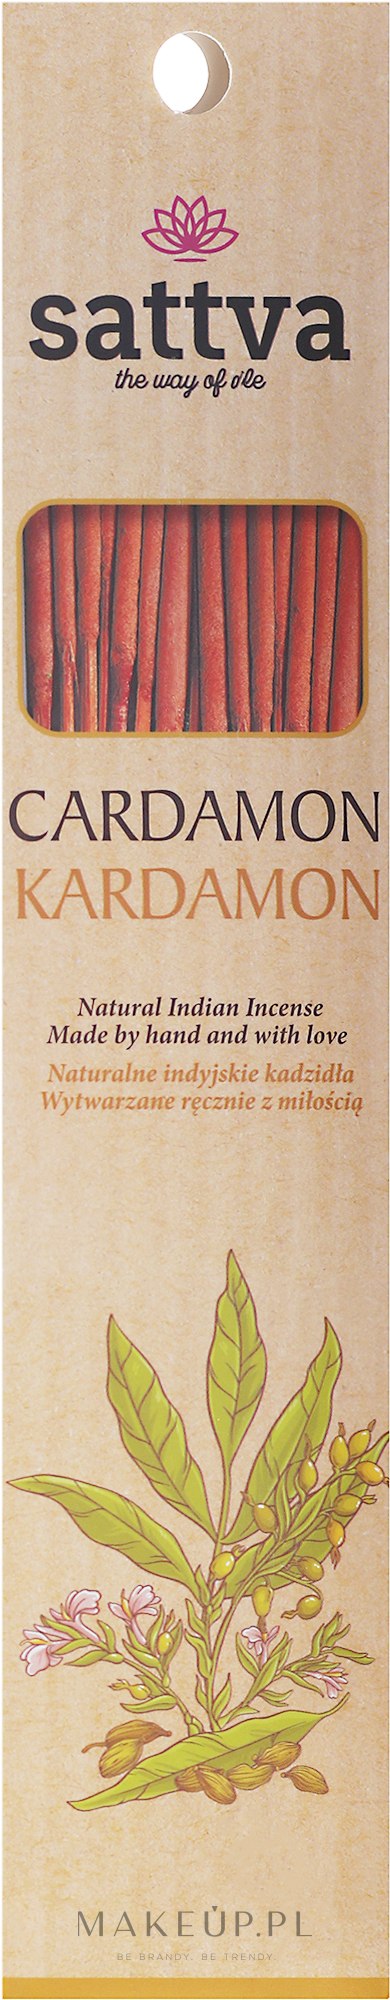 Naturalne indyjskie kadzidła Kardamon - Sattva Kardamon — Zdjęcie 15 szt.